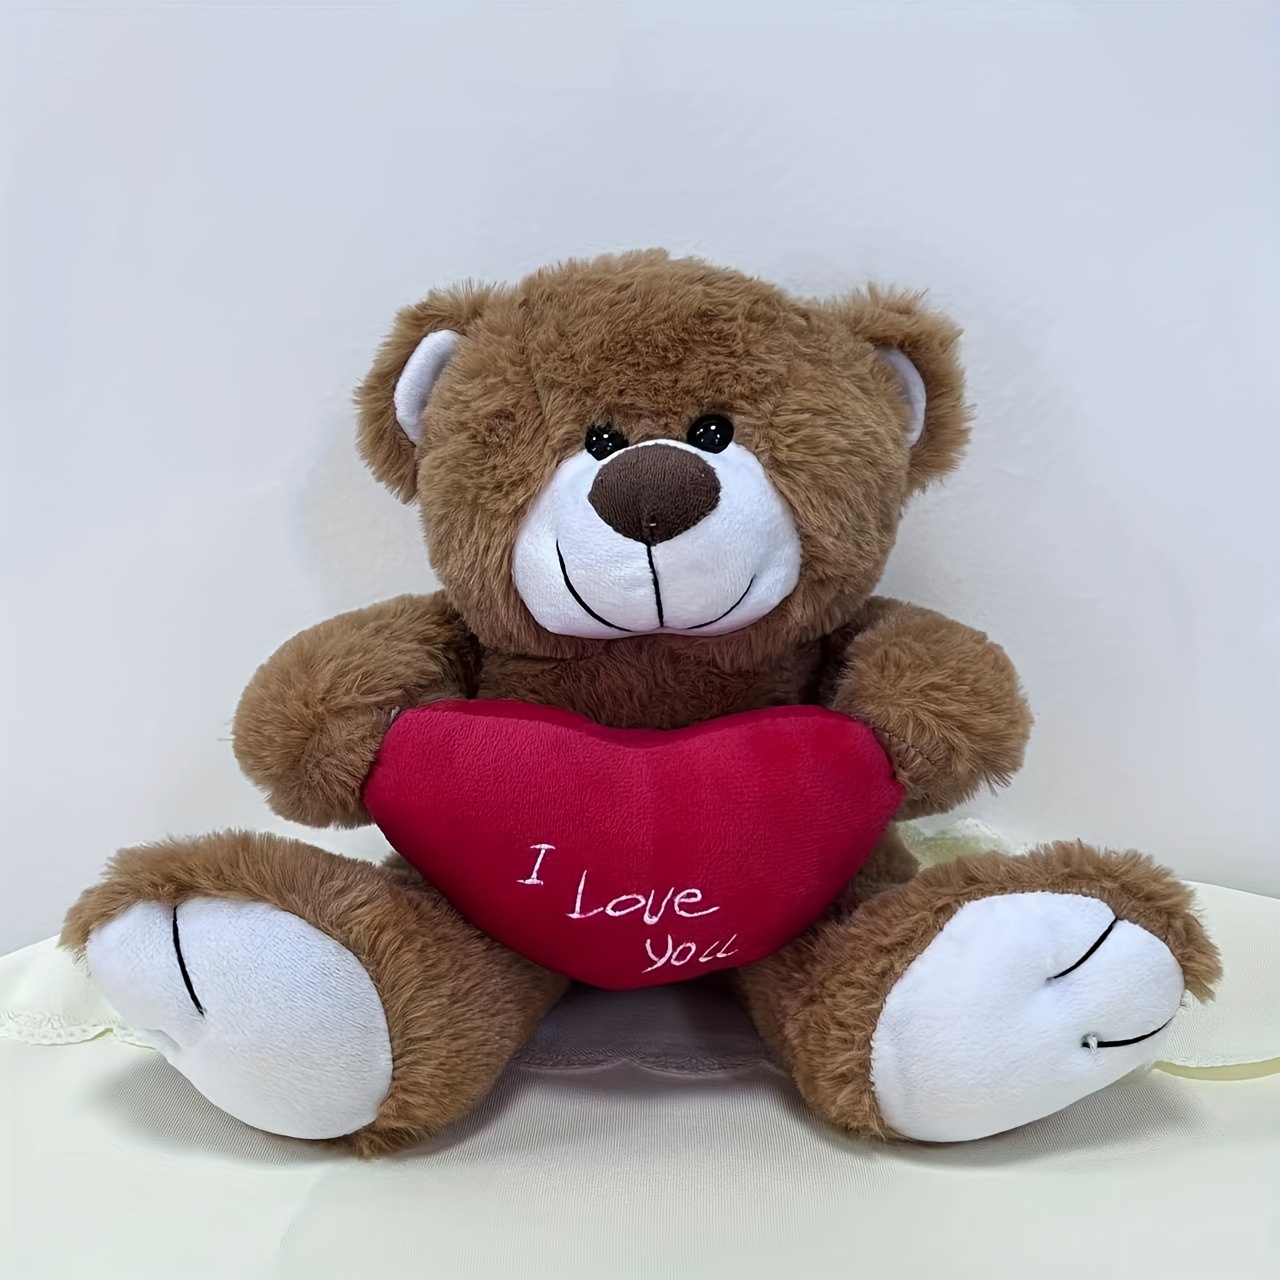 Peluches 🧸 pequeños ❤️ $125 . . . ¡Un dulce detalle con amor! ♥️ #peluches  #amor #regalos #sanvalentin